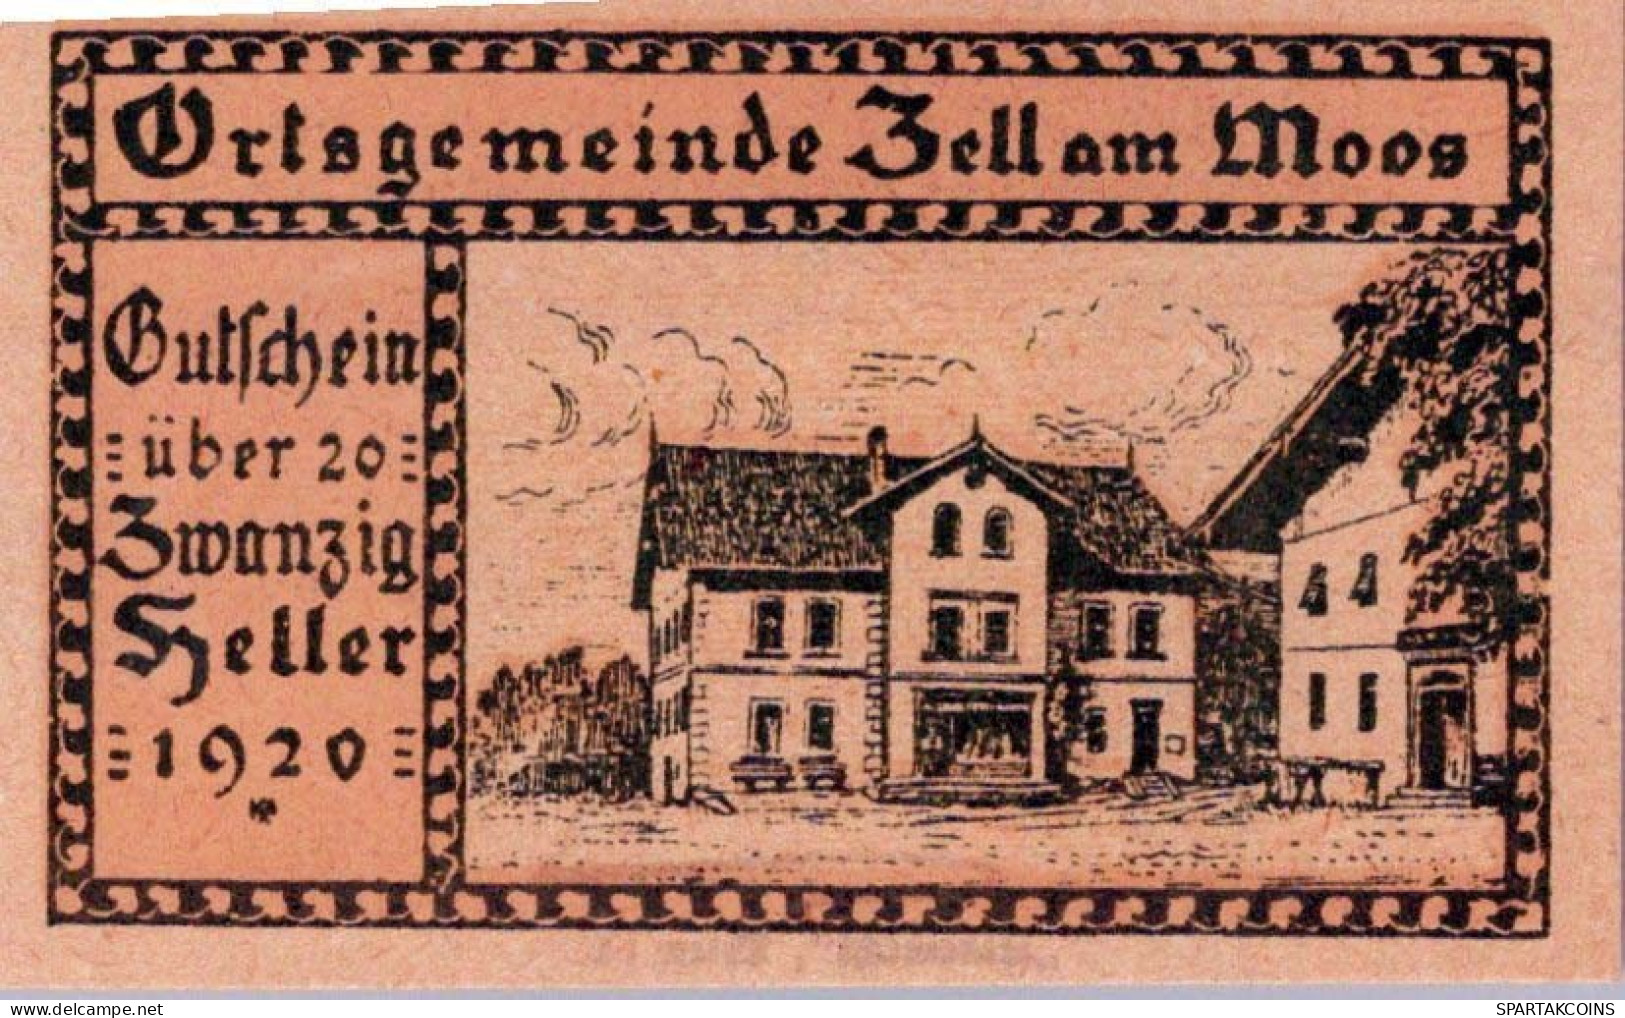 20 HELLER 1920 Stadt ZELL AM MOOS Oberösterreich Österreich Notgeld #PE163 - [11] Local Banknote Issues